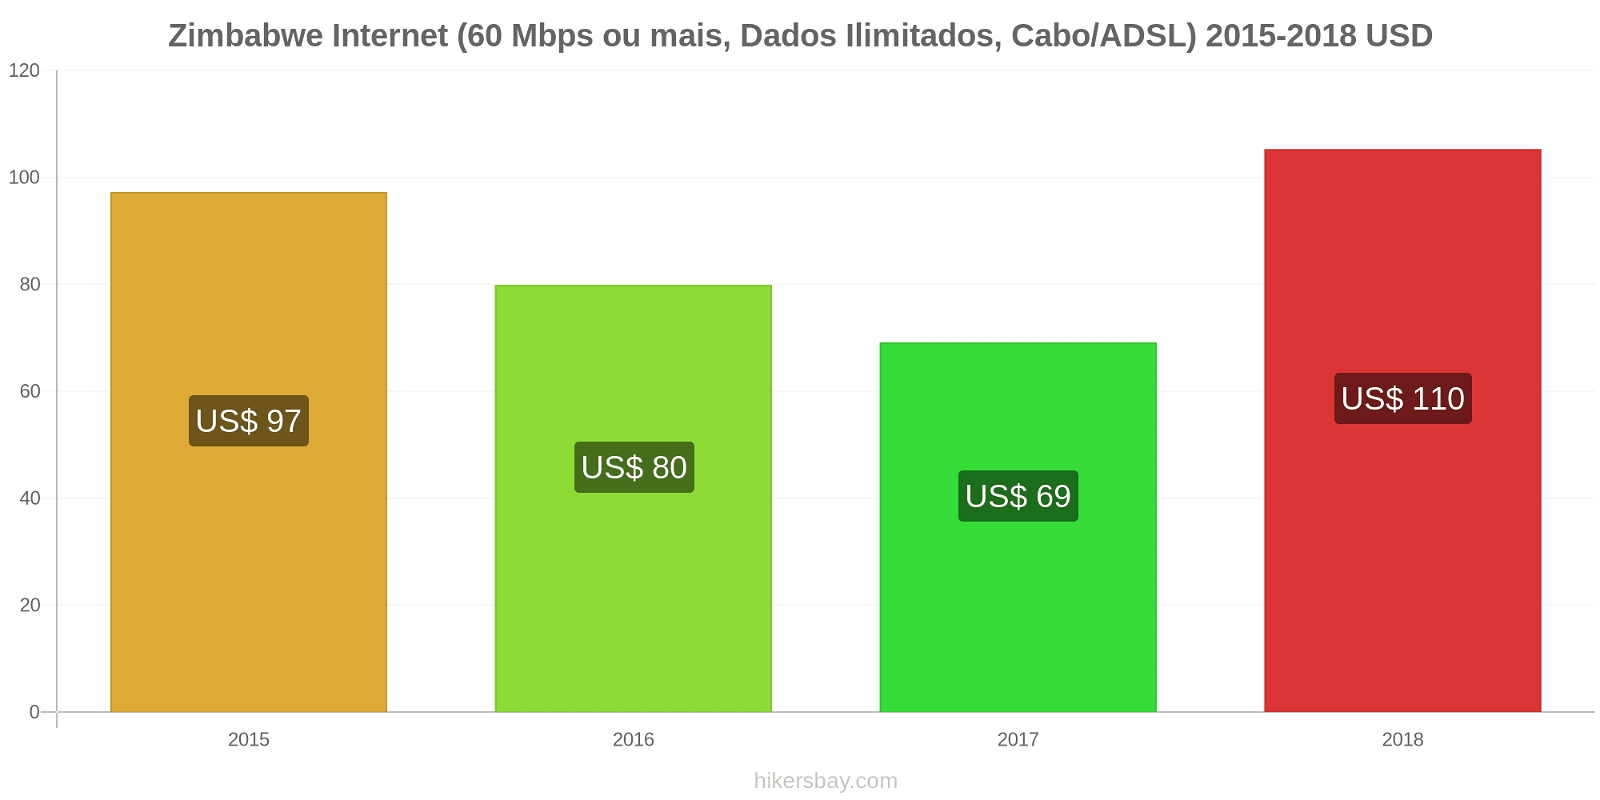 Zimbabwe mudanças de preços Internet (60 Mbps ou mais, dados ilimitados, cabo/ADSL) hikersbay.com